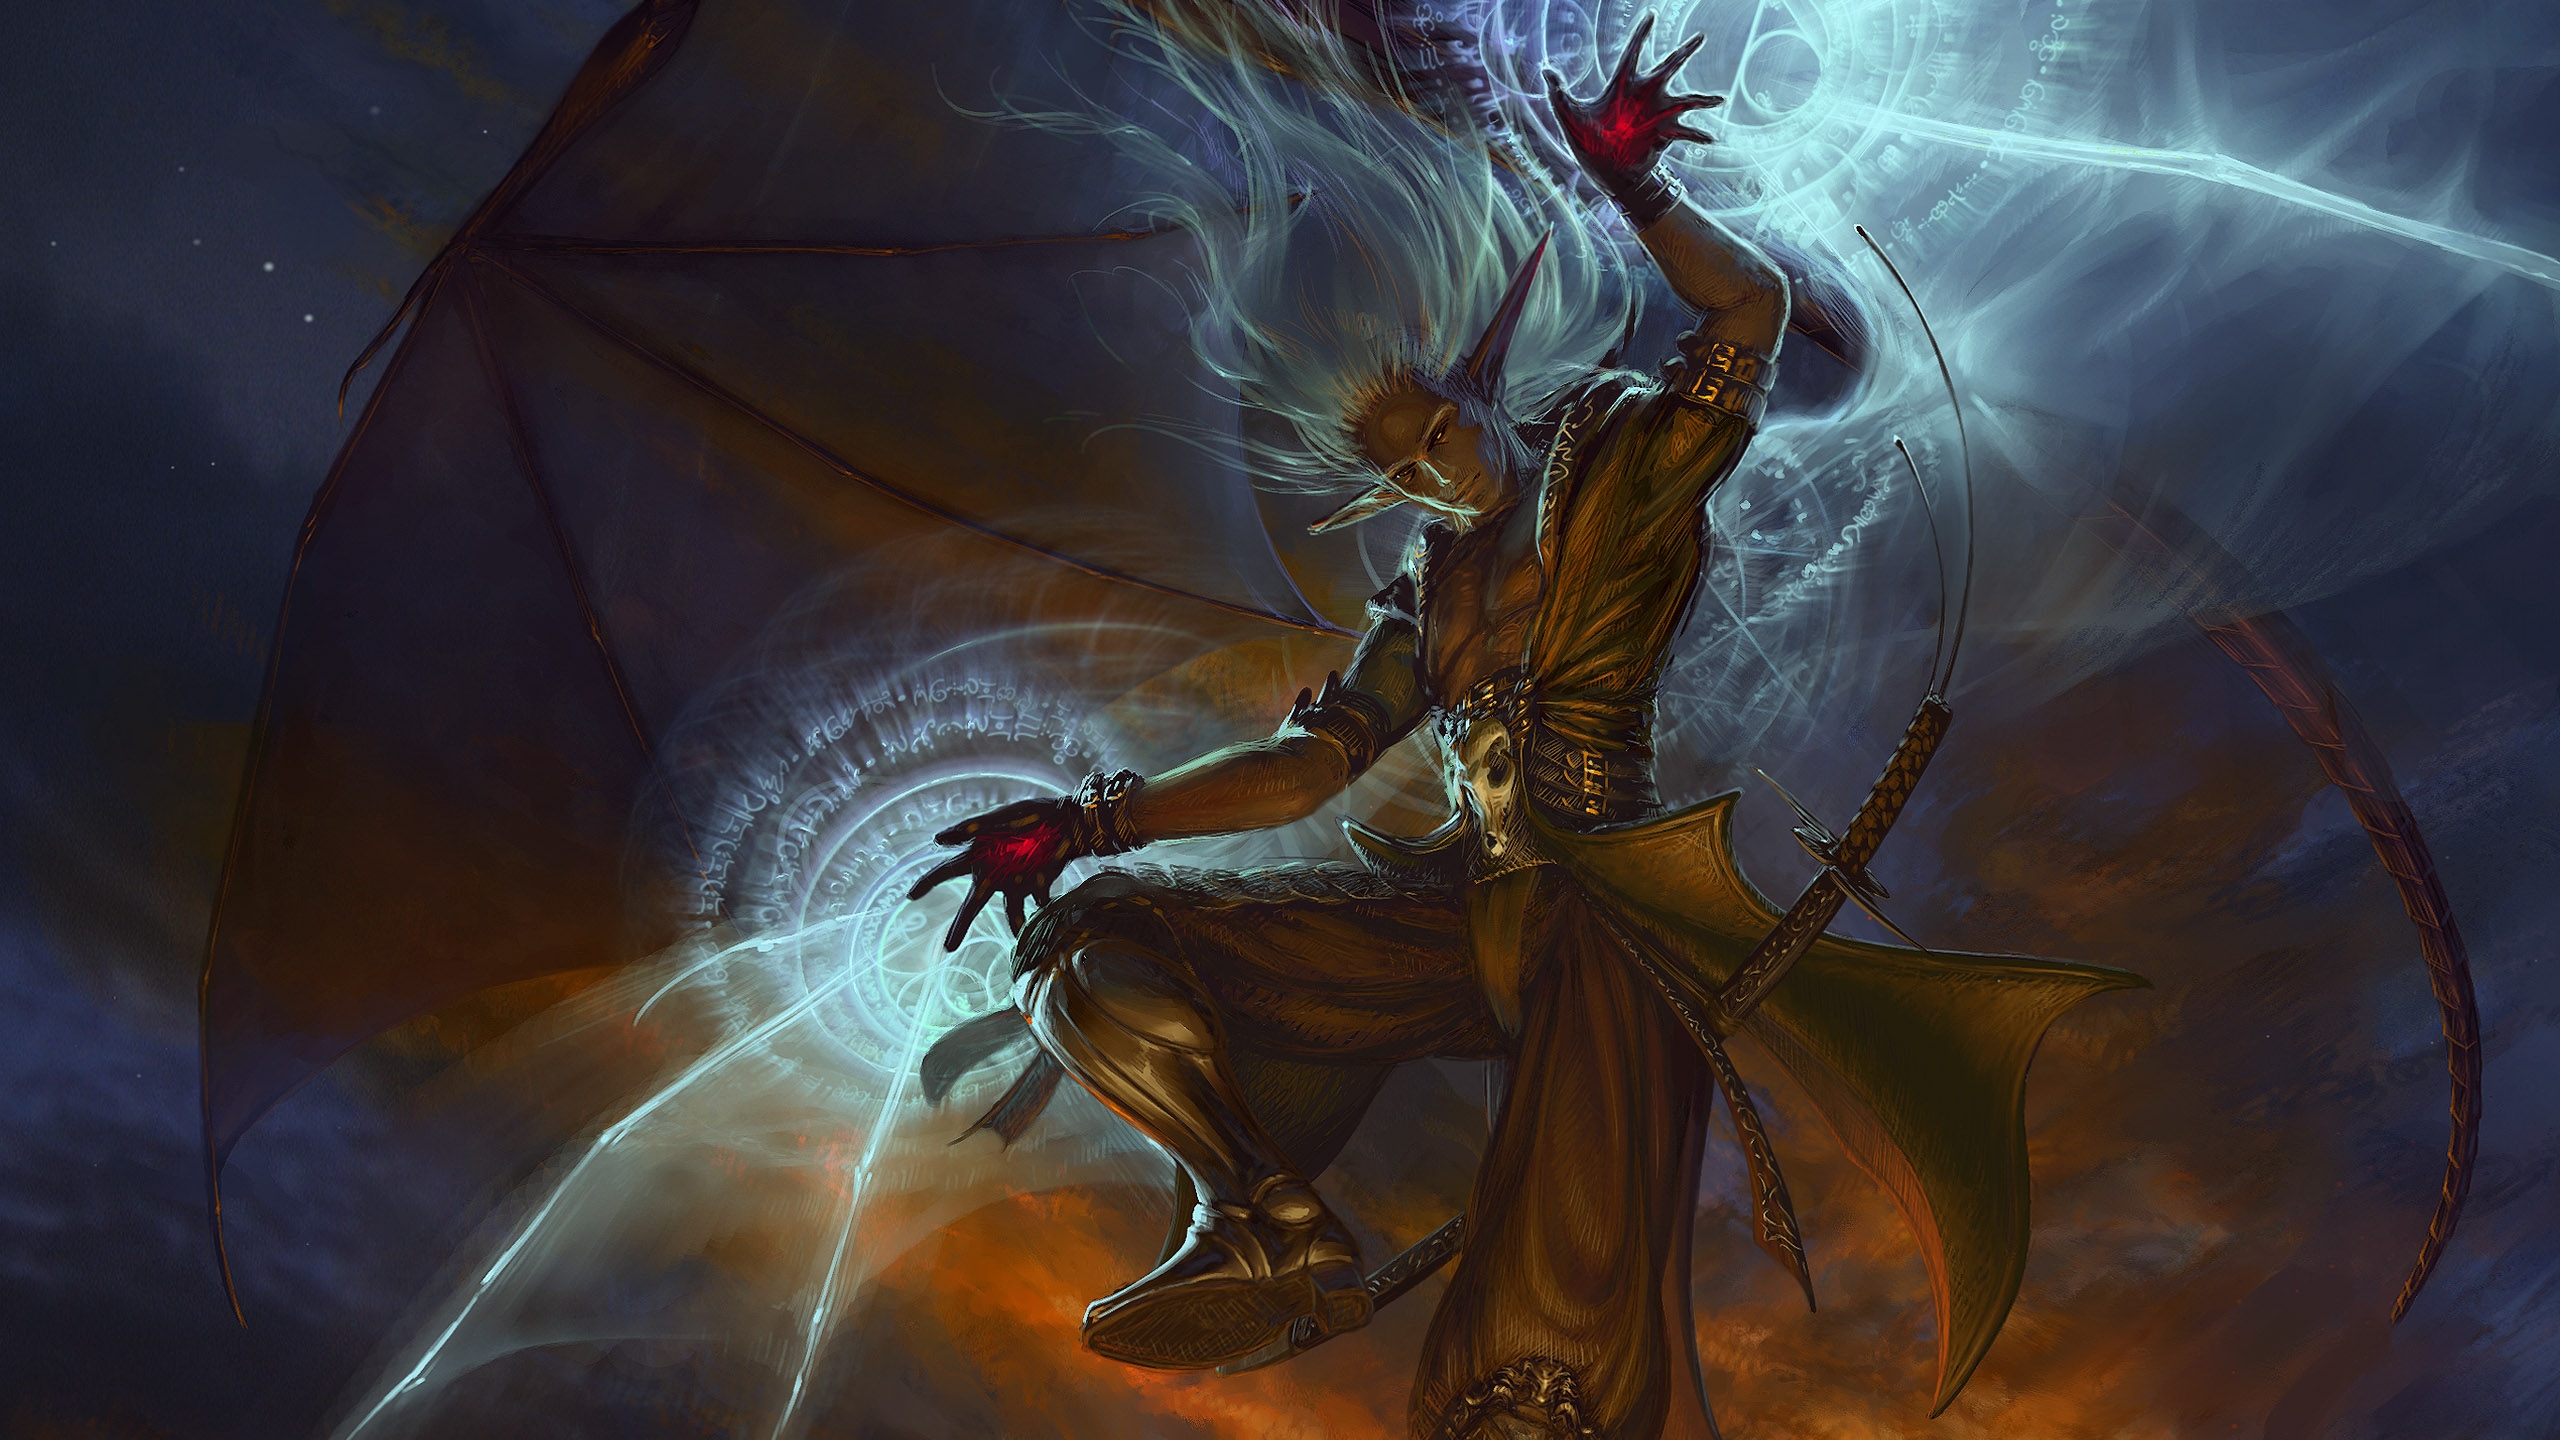 fantasy, sorcerer Image for desktop